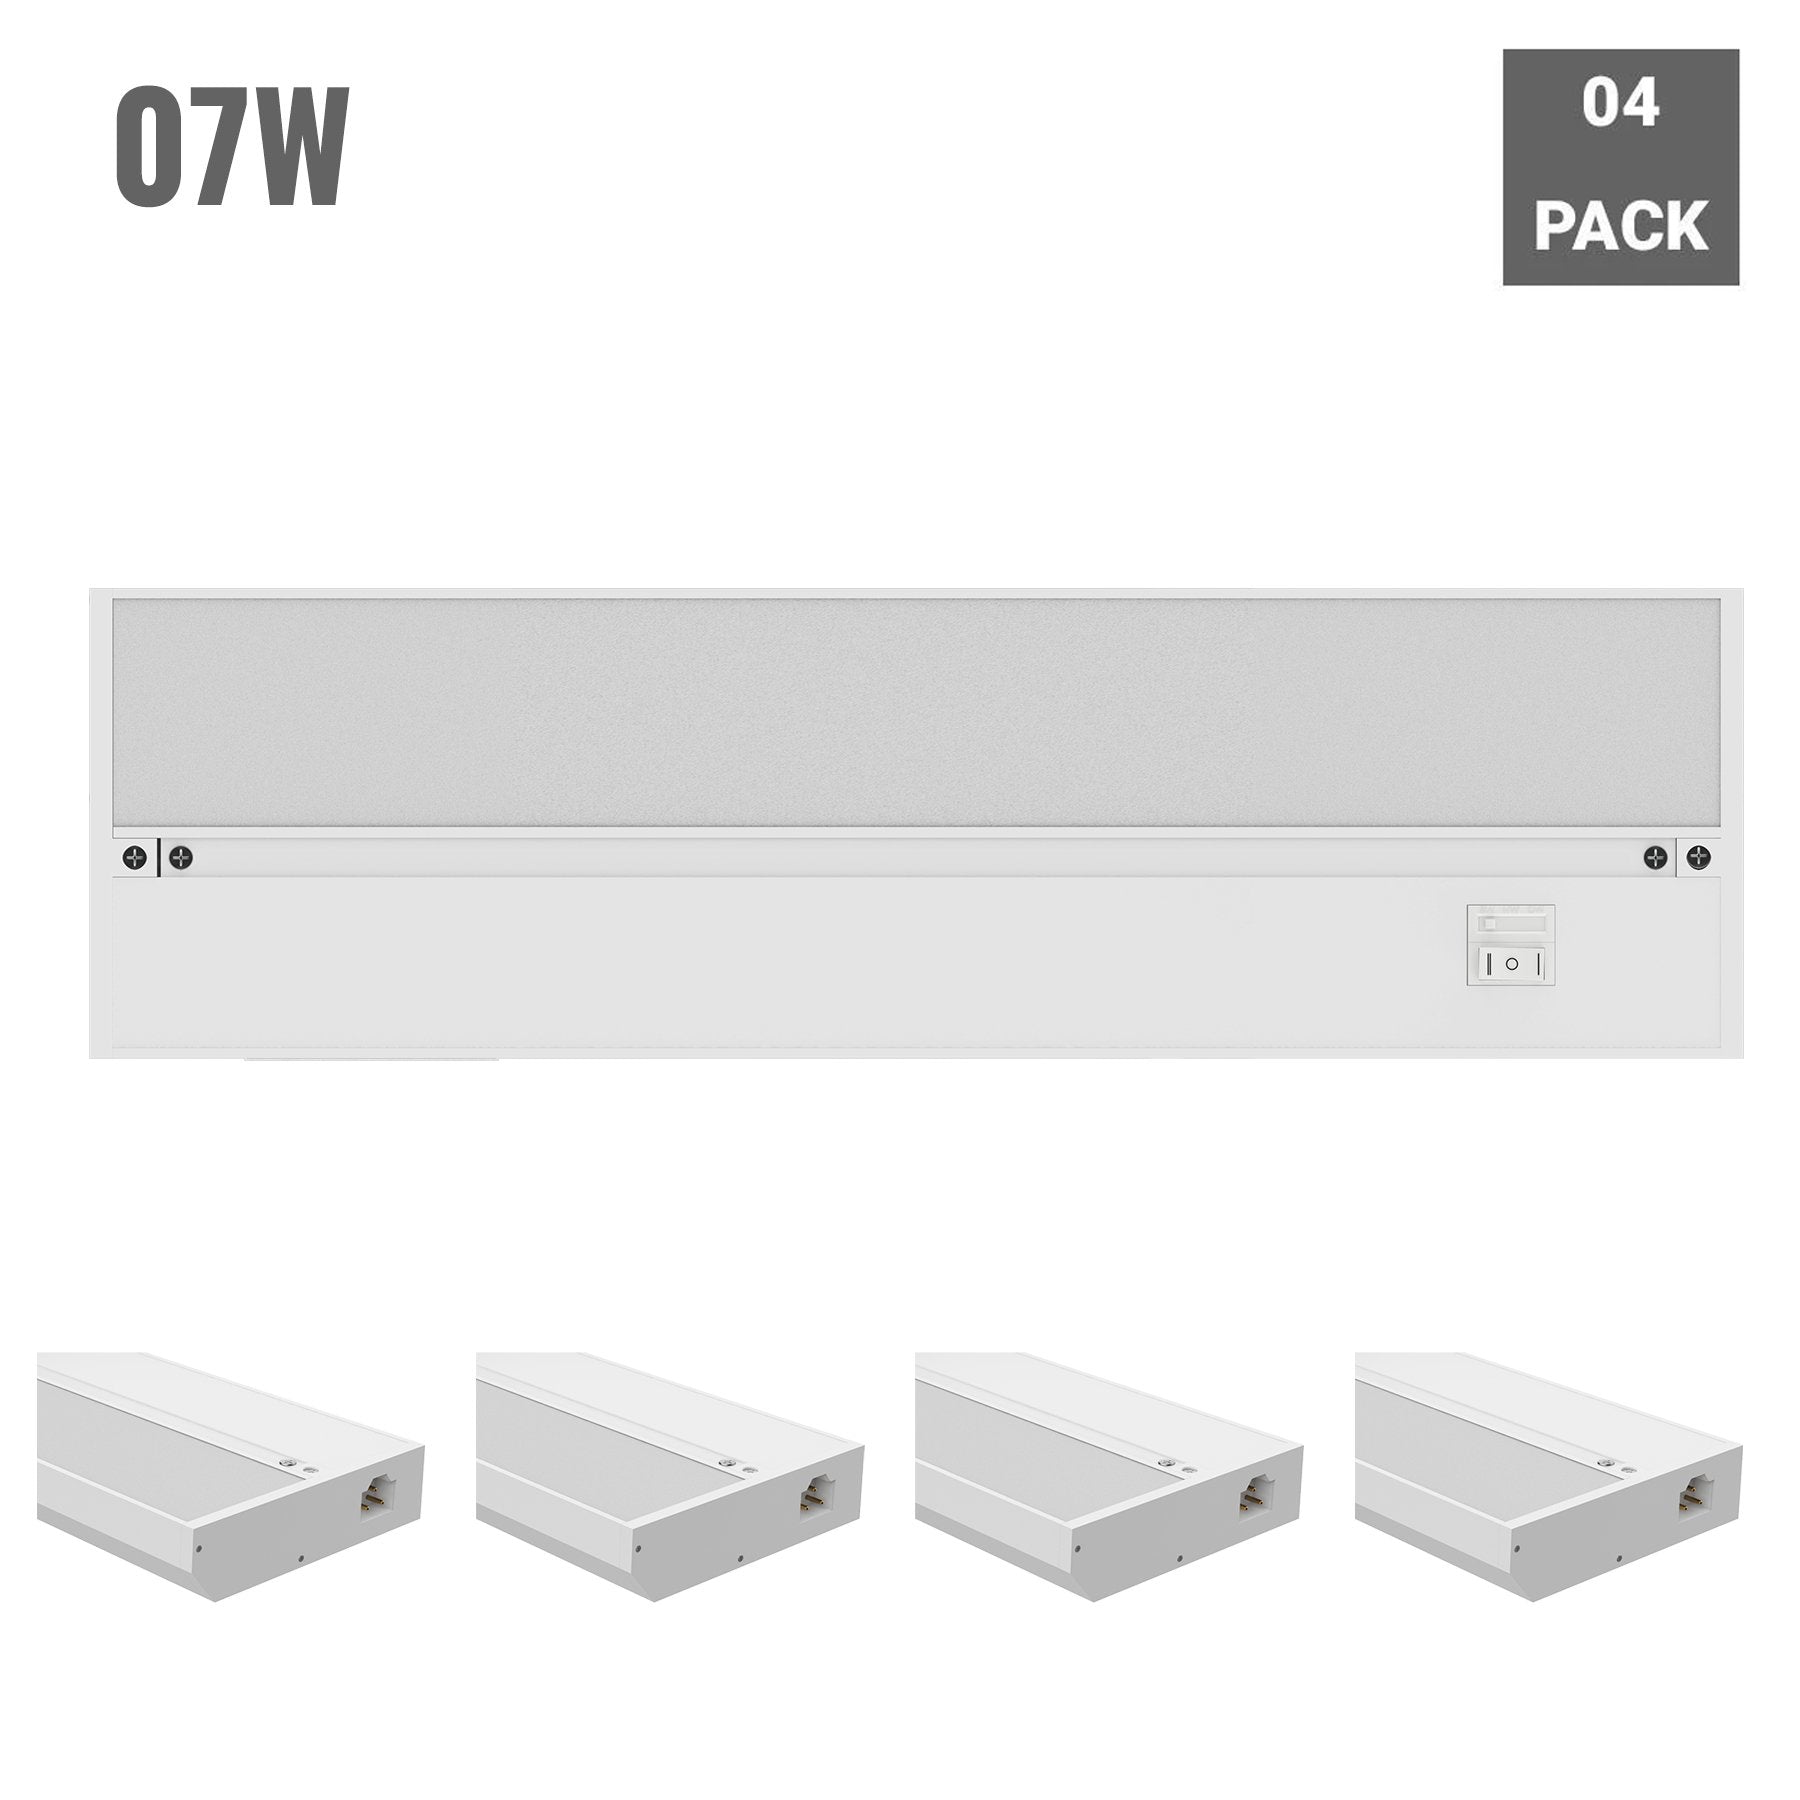 led-under-cabinet-light-120v-white-cct-changeable-3000k-4000k-5000k